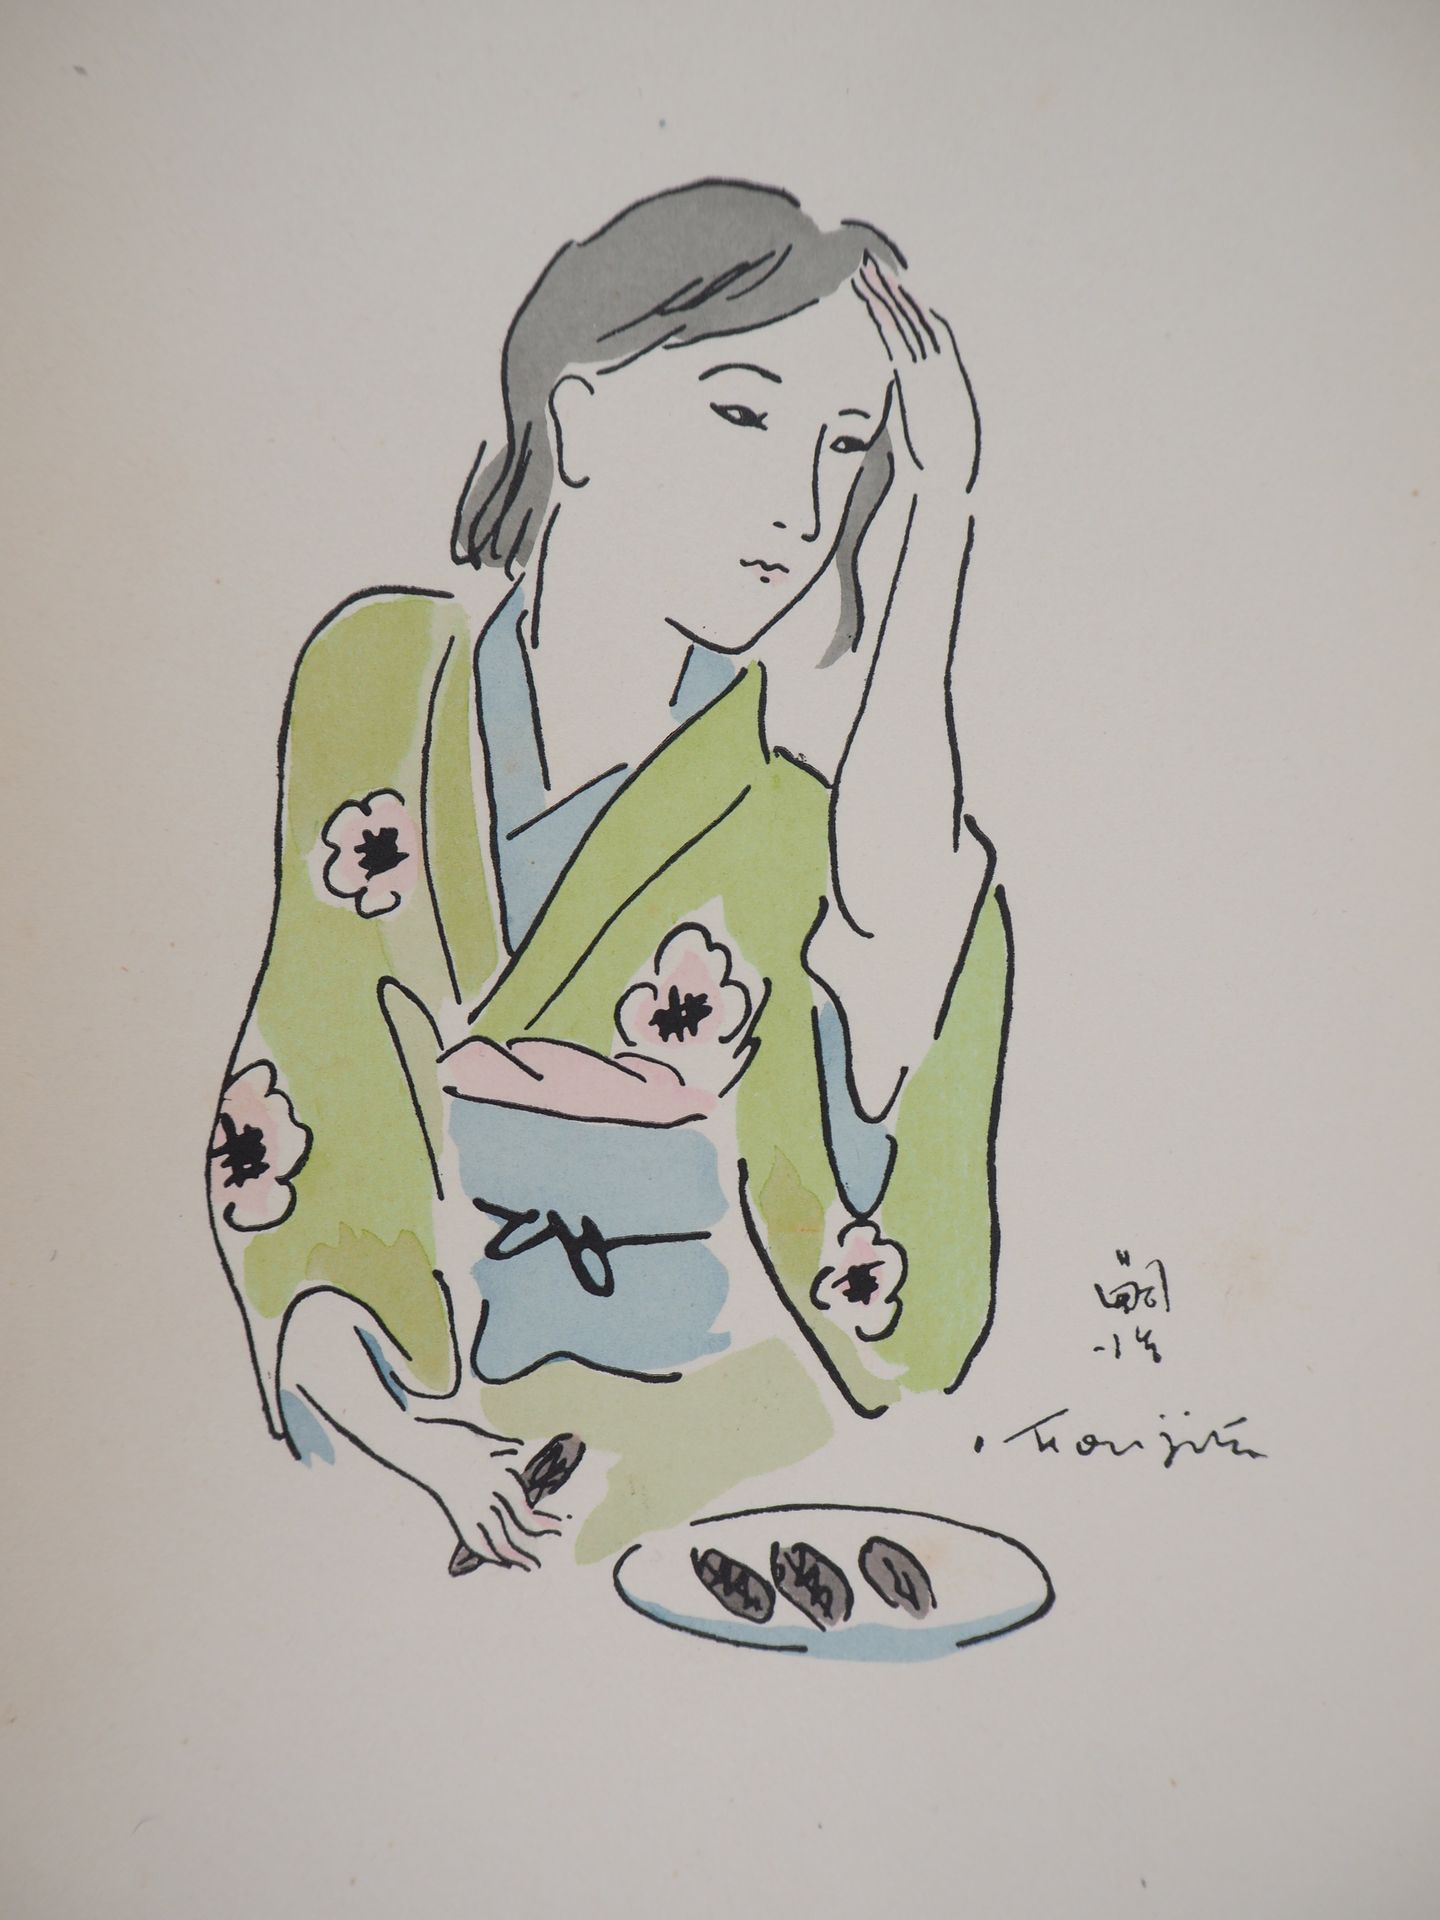 Tsuguharu FOUJITA Leonard Tsuguharu FOUJITA

Mujer con kimono peinándose, 1936

&hellip;